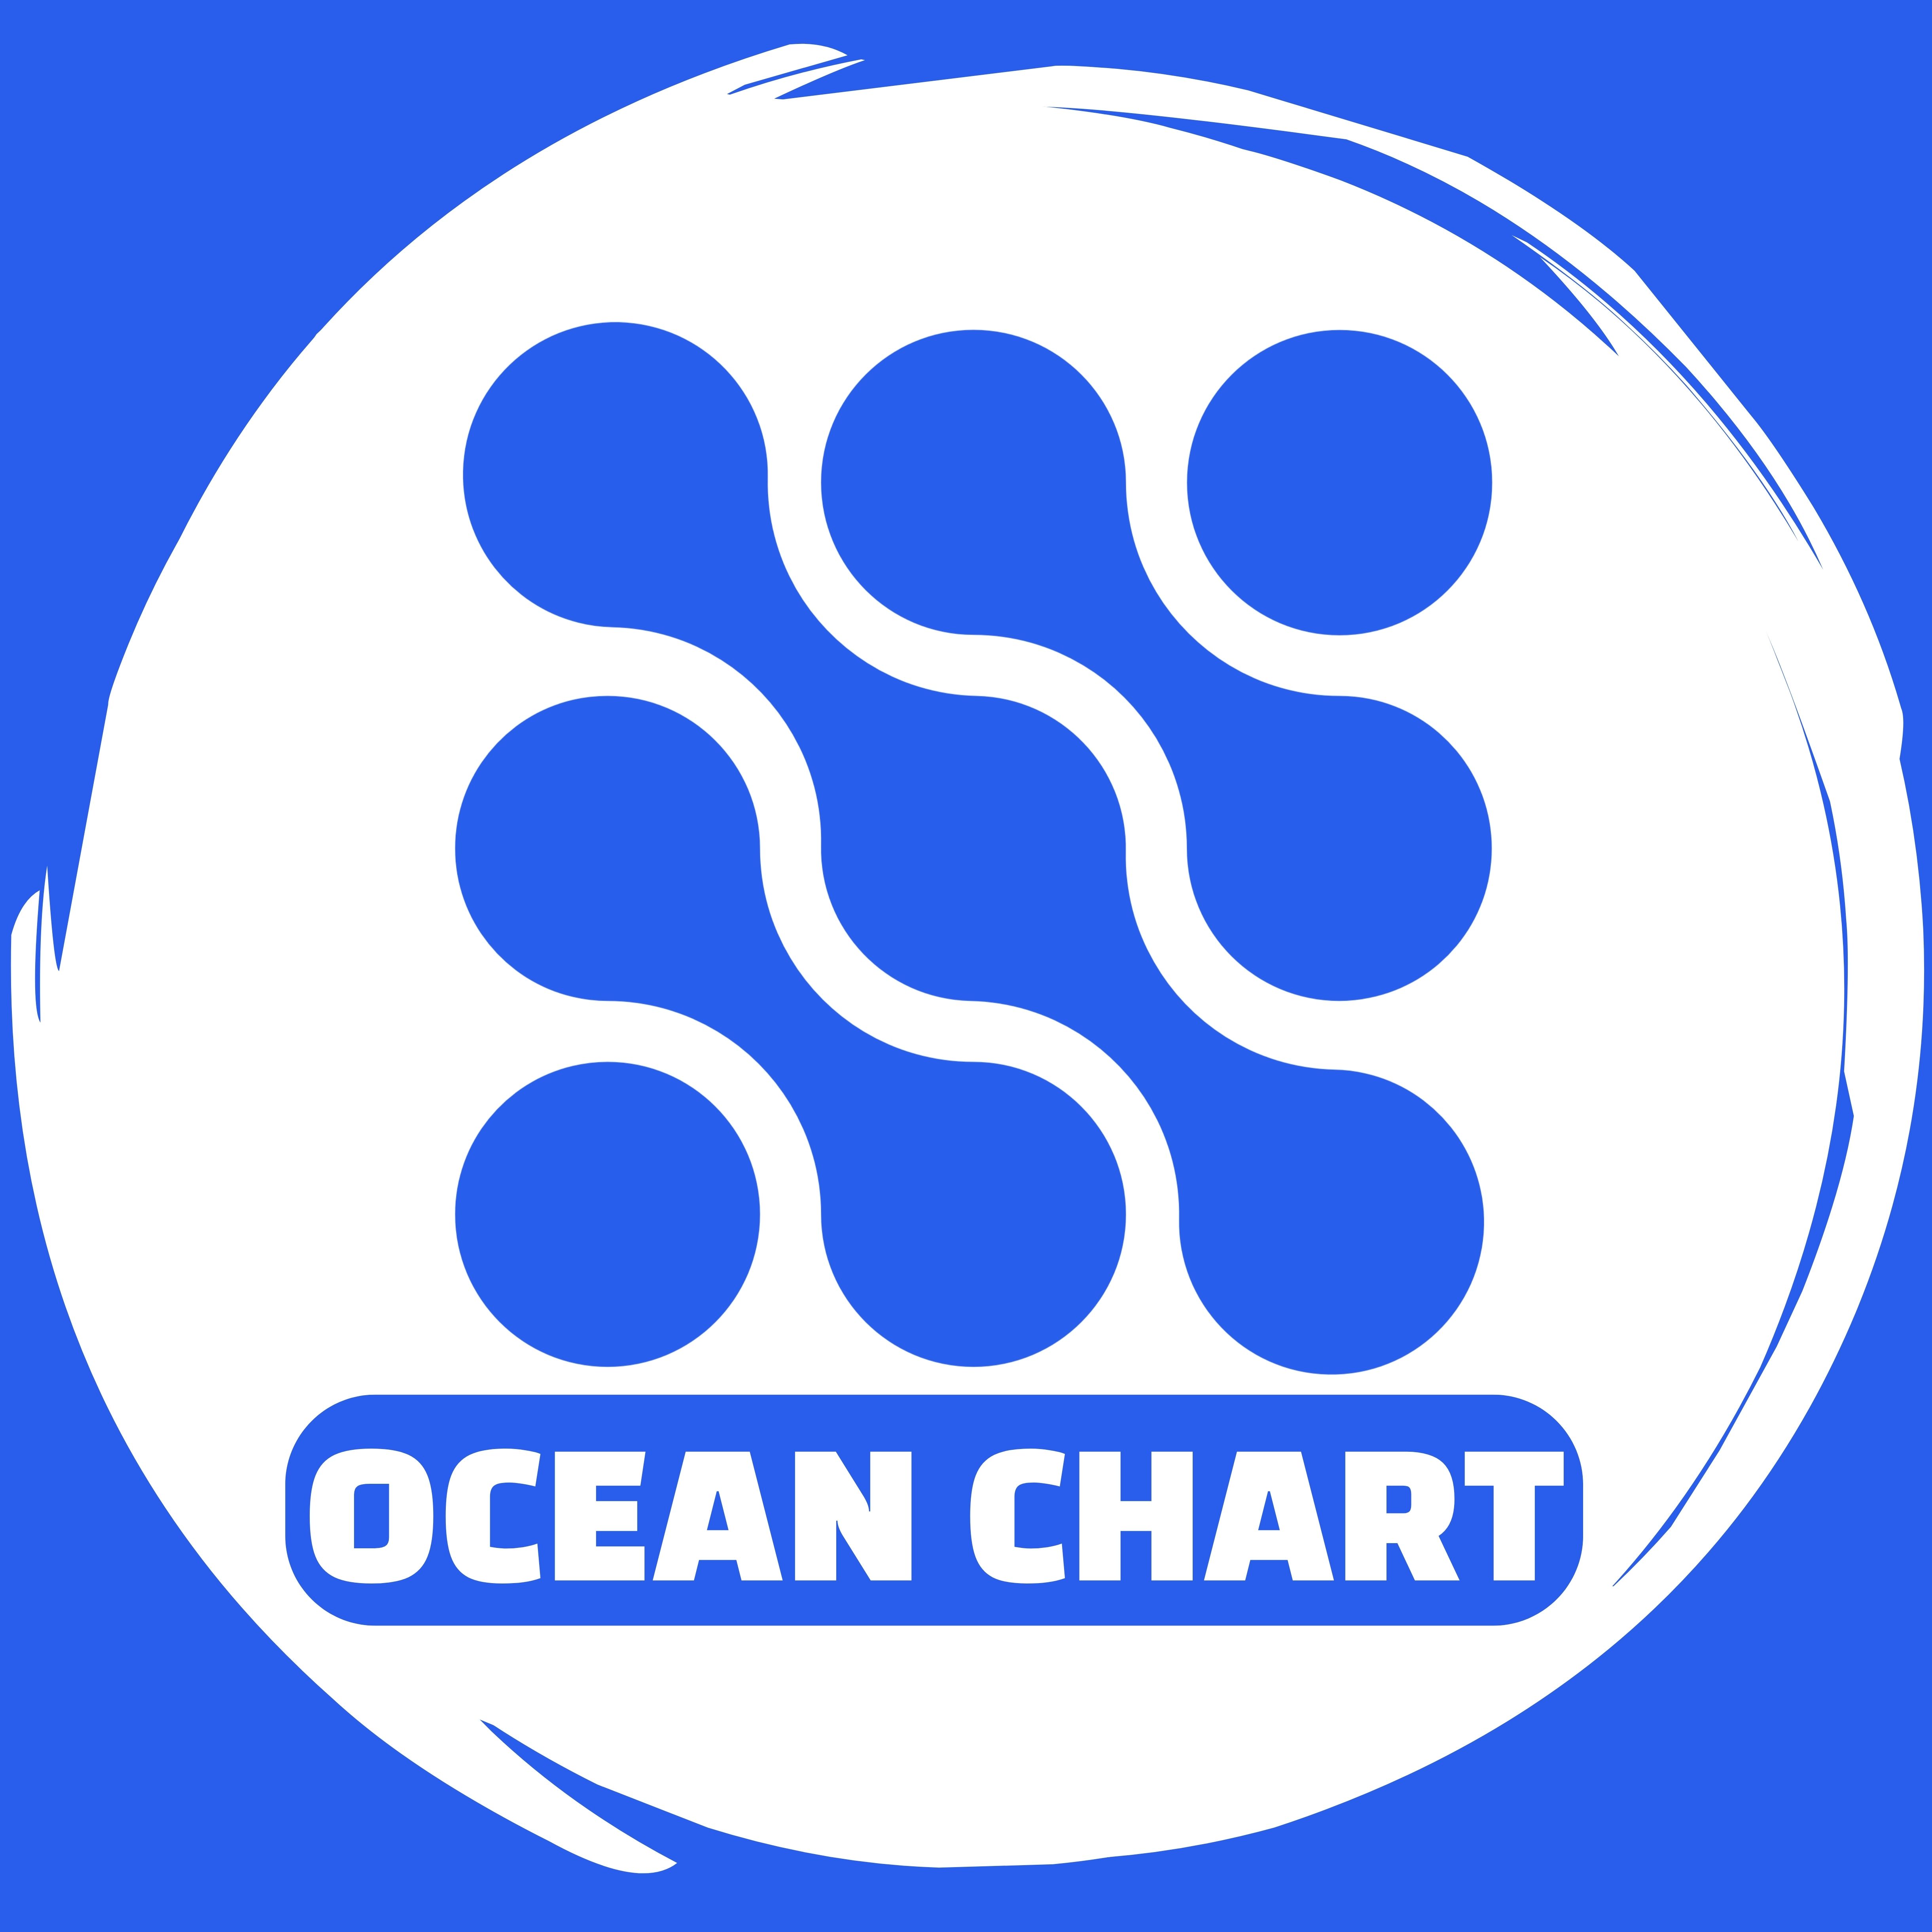 Ocean channel